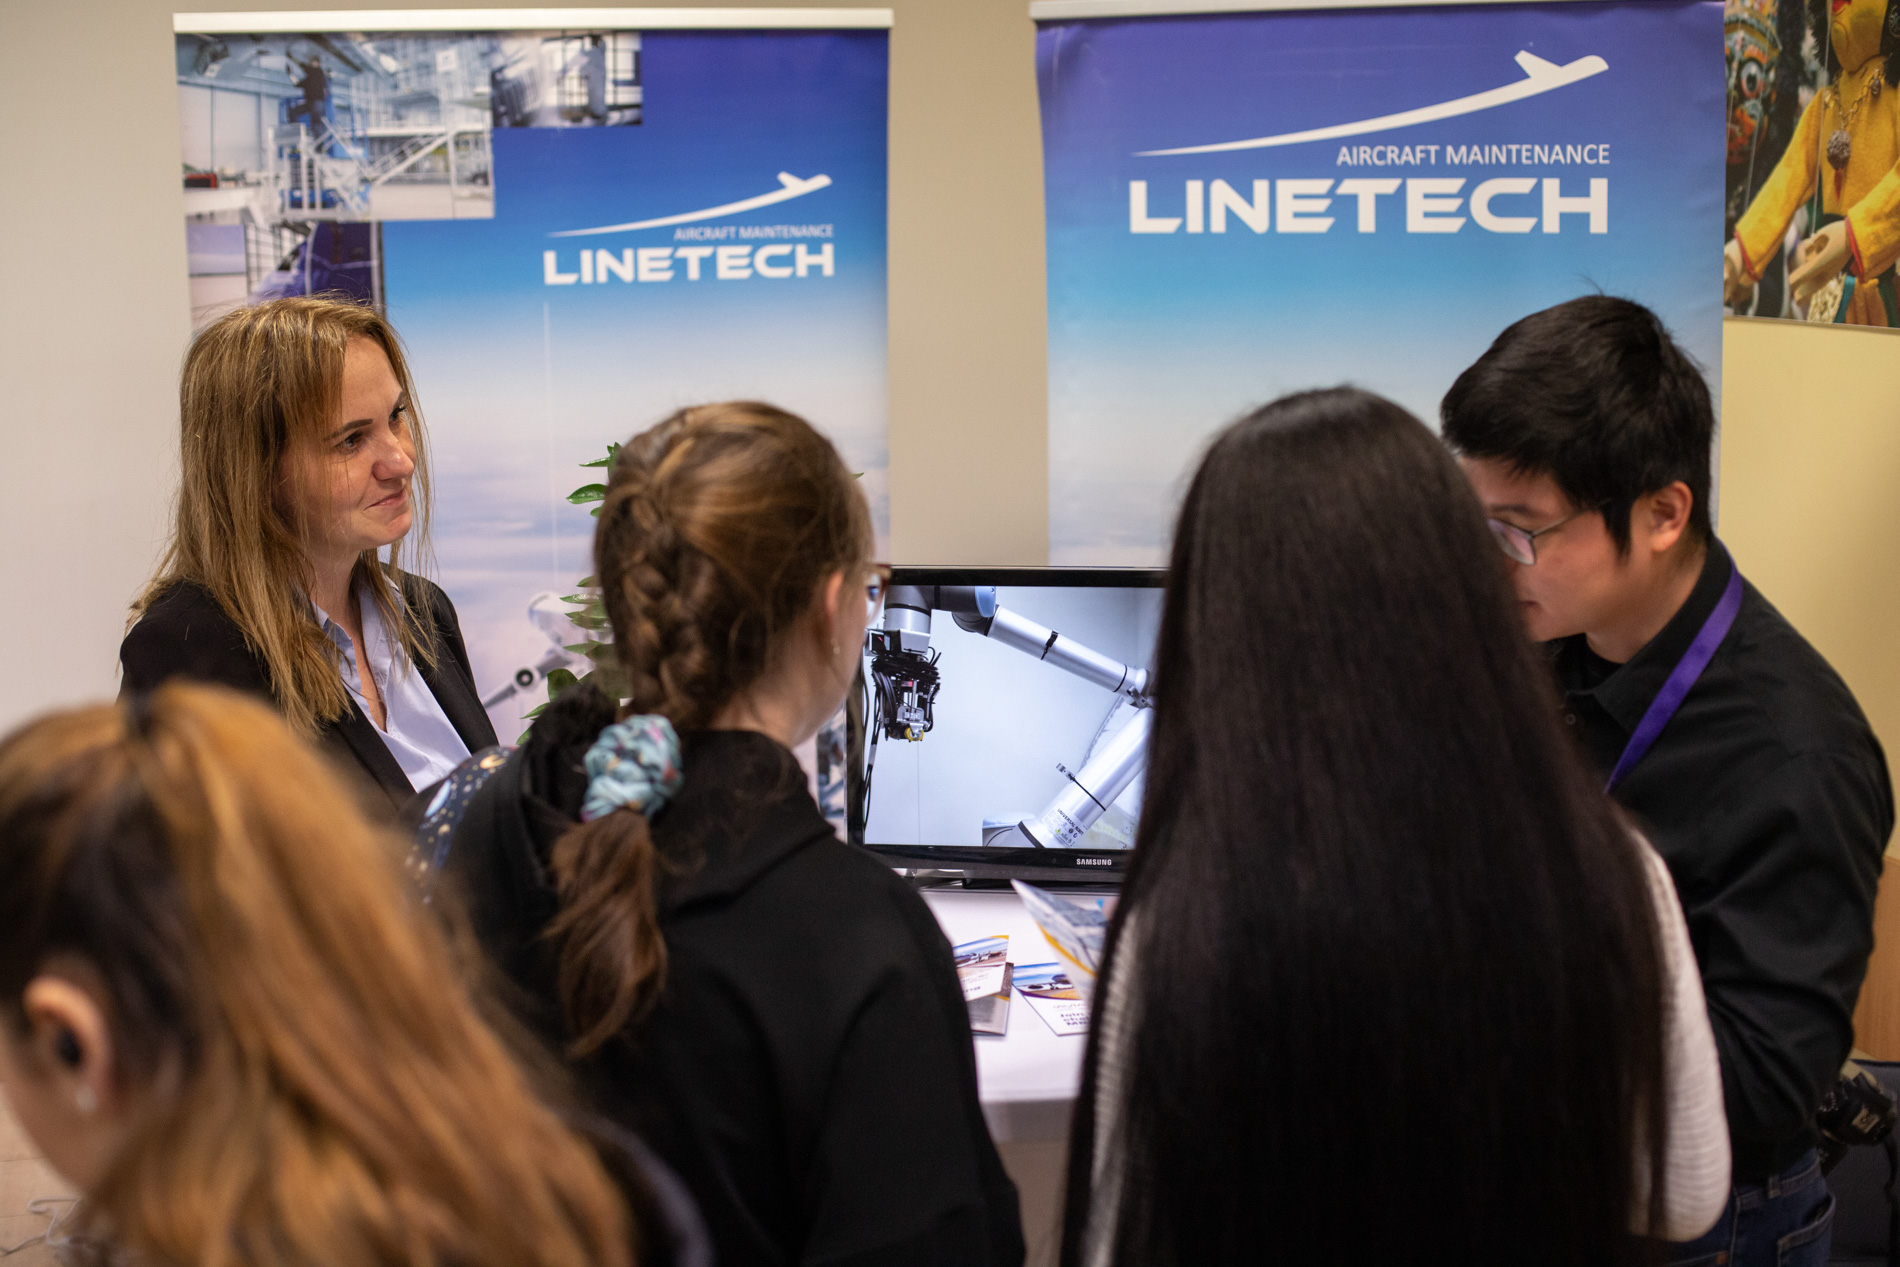 Przedstawiciele firmy LINETECH prezentujący swoją ofertę podczas targów Aviation Career Day we WSIiZ